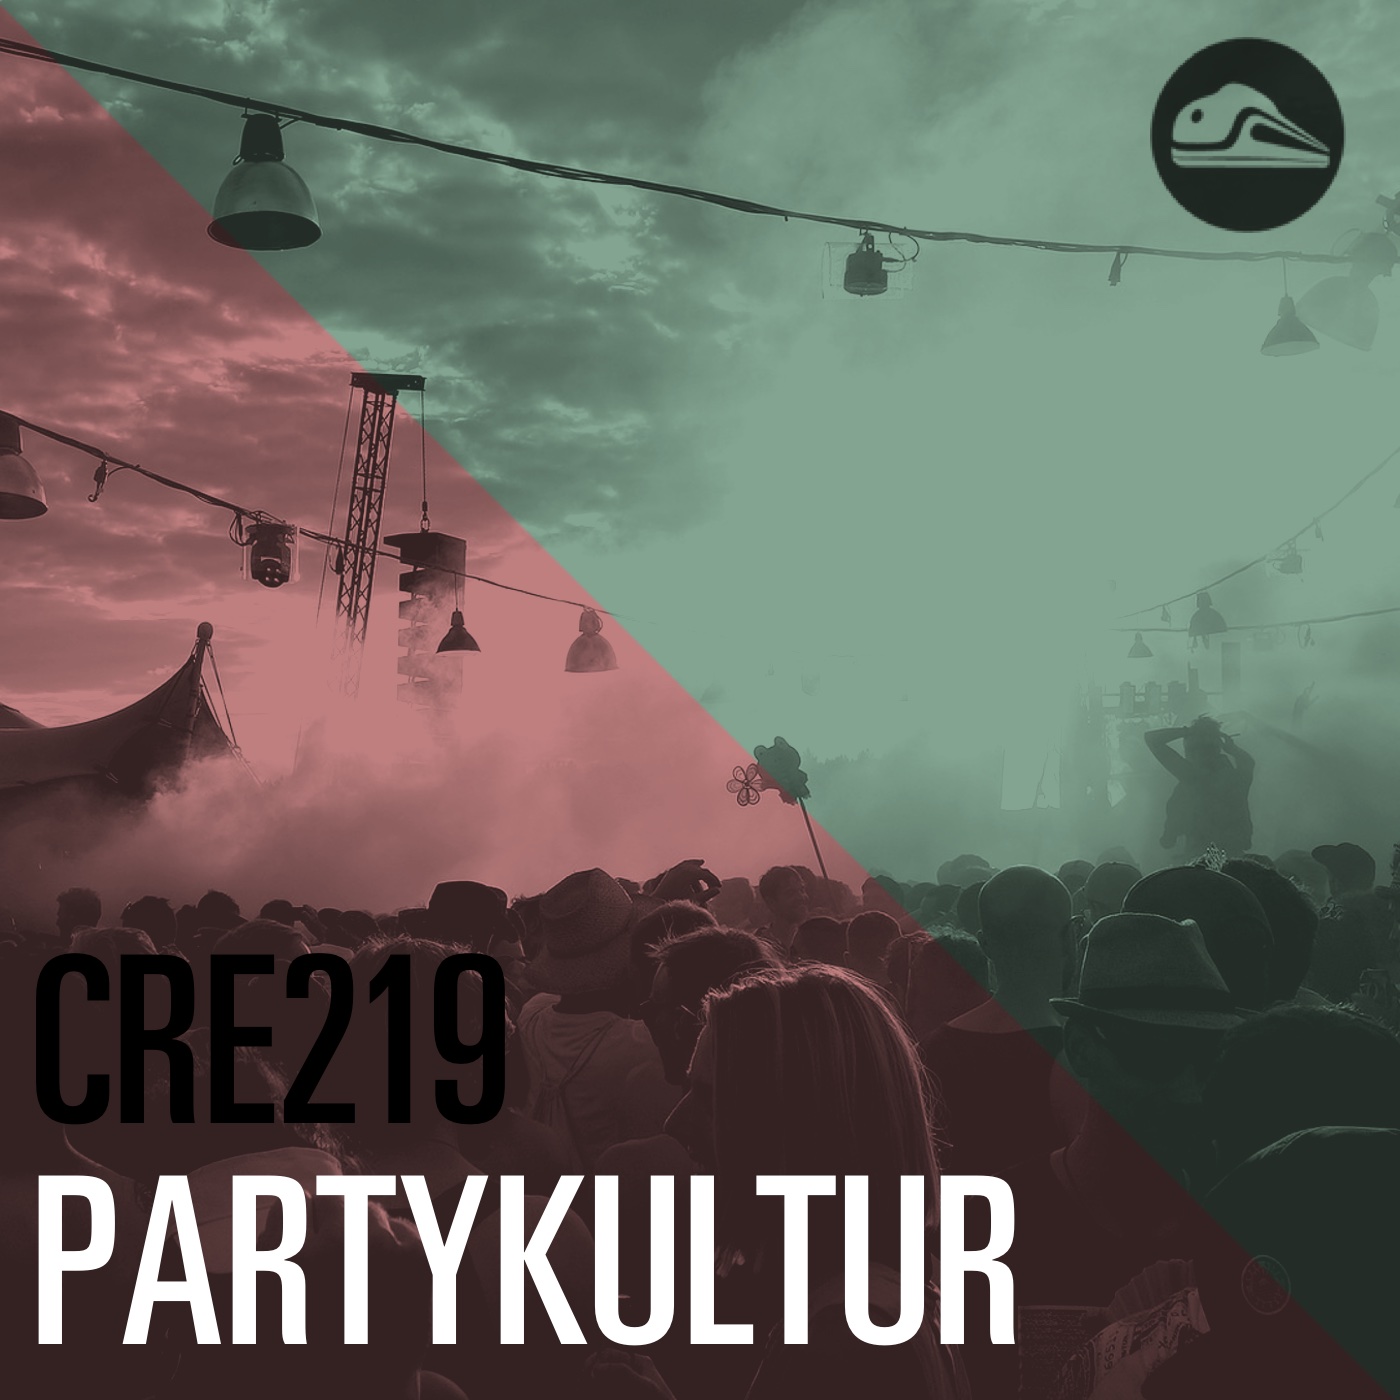 CRE219 Partykultur